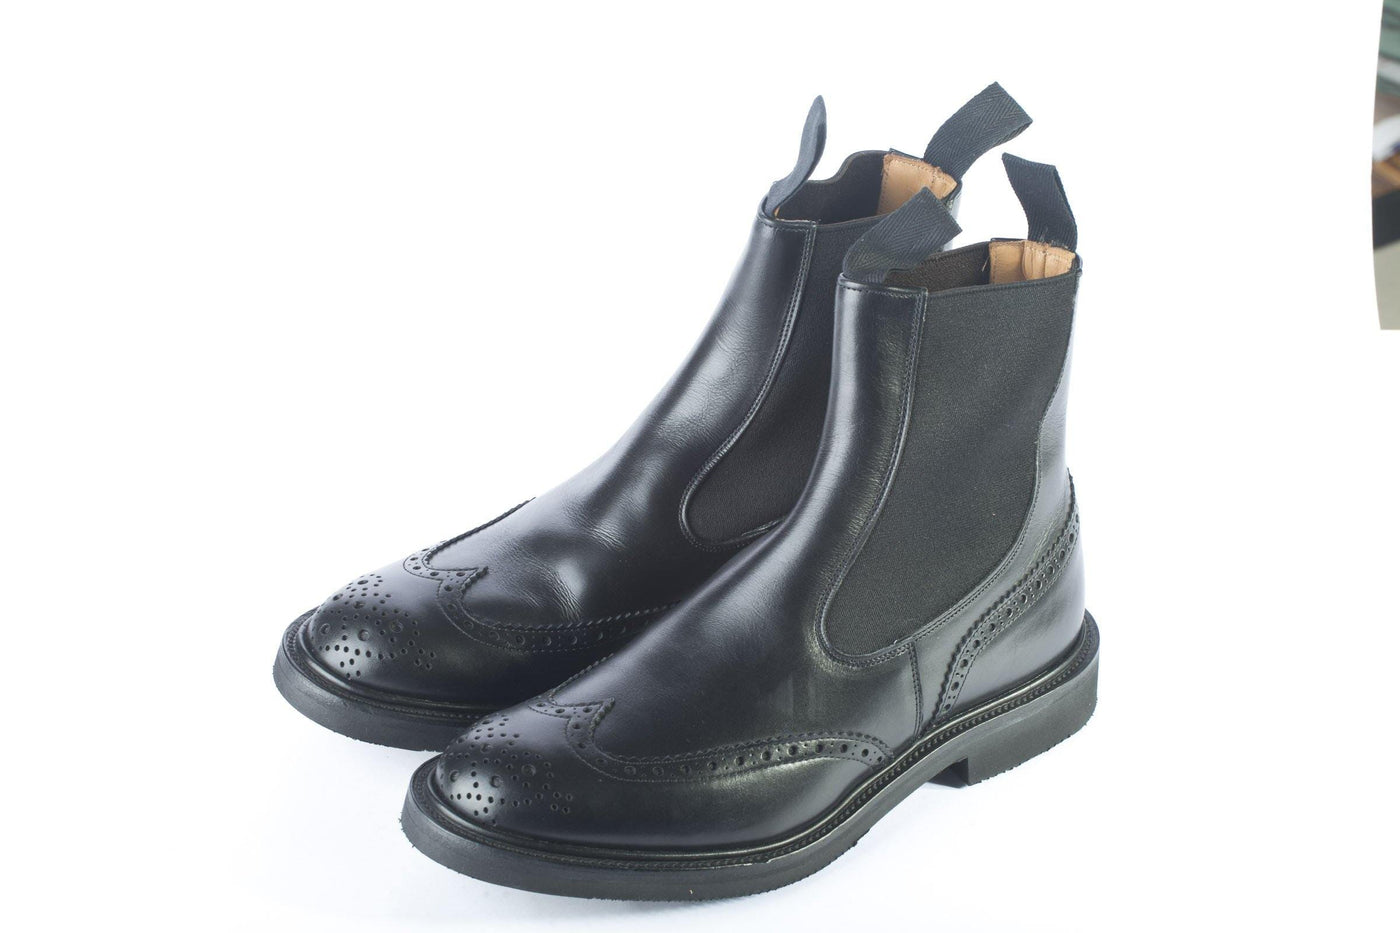 Tricker's Henry boot - Chirico Store - 10, 40, 40.5, 7, 7.5, 8, 8.5, 9, 9.5, scarpa uomo, Scarpe, Stivaletti, Tricker's - Tricker's